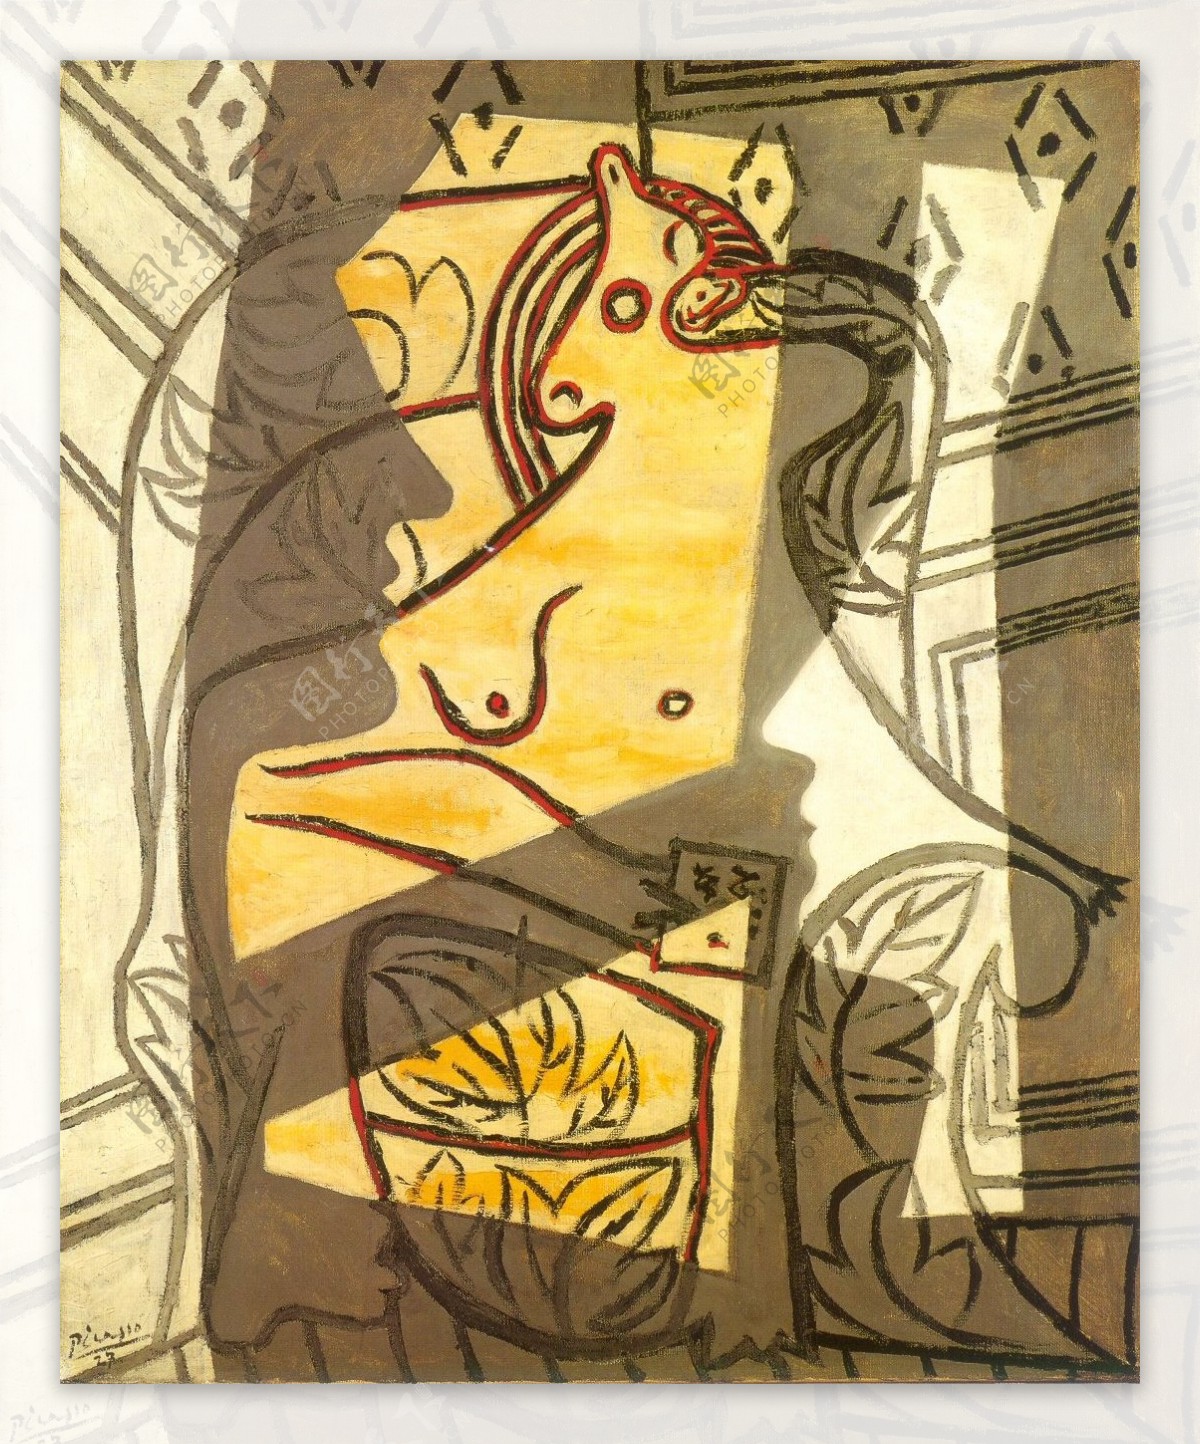 1927Femmedansunfauteuil2西班牙画家巴勃罗毕加索抽象油画人物人体油画装饰画